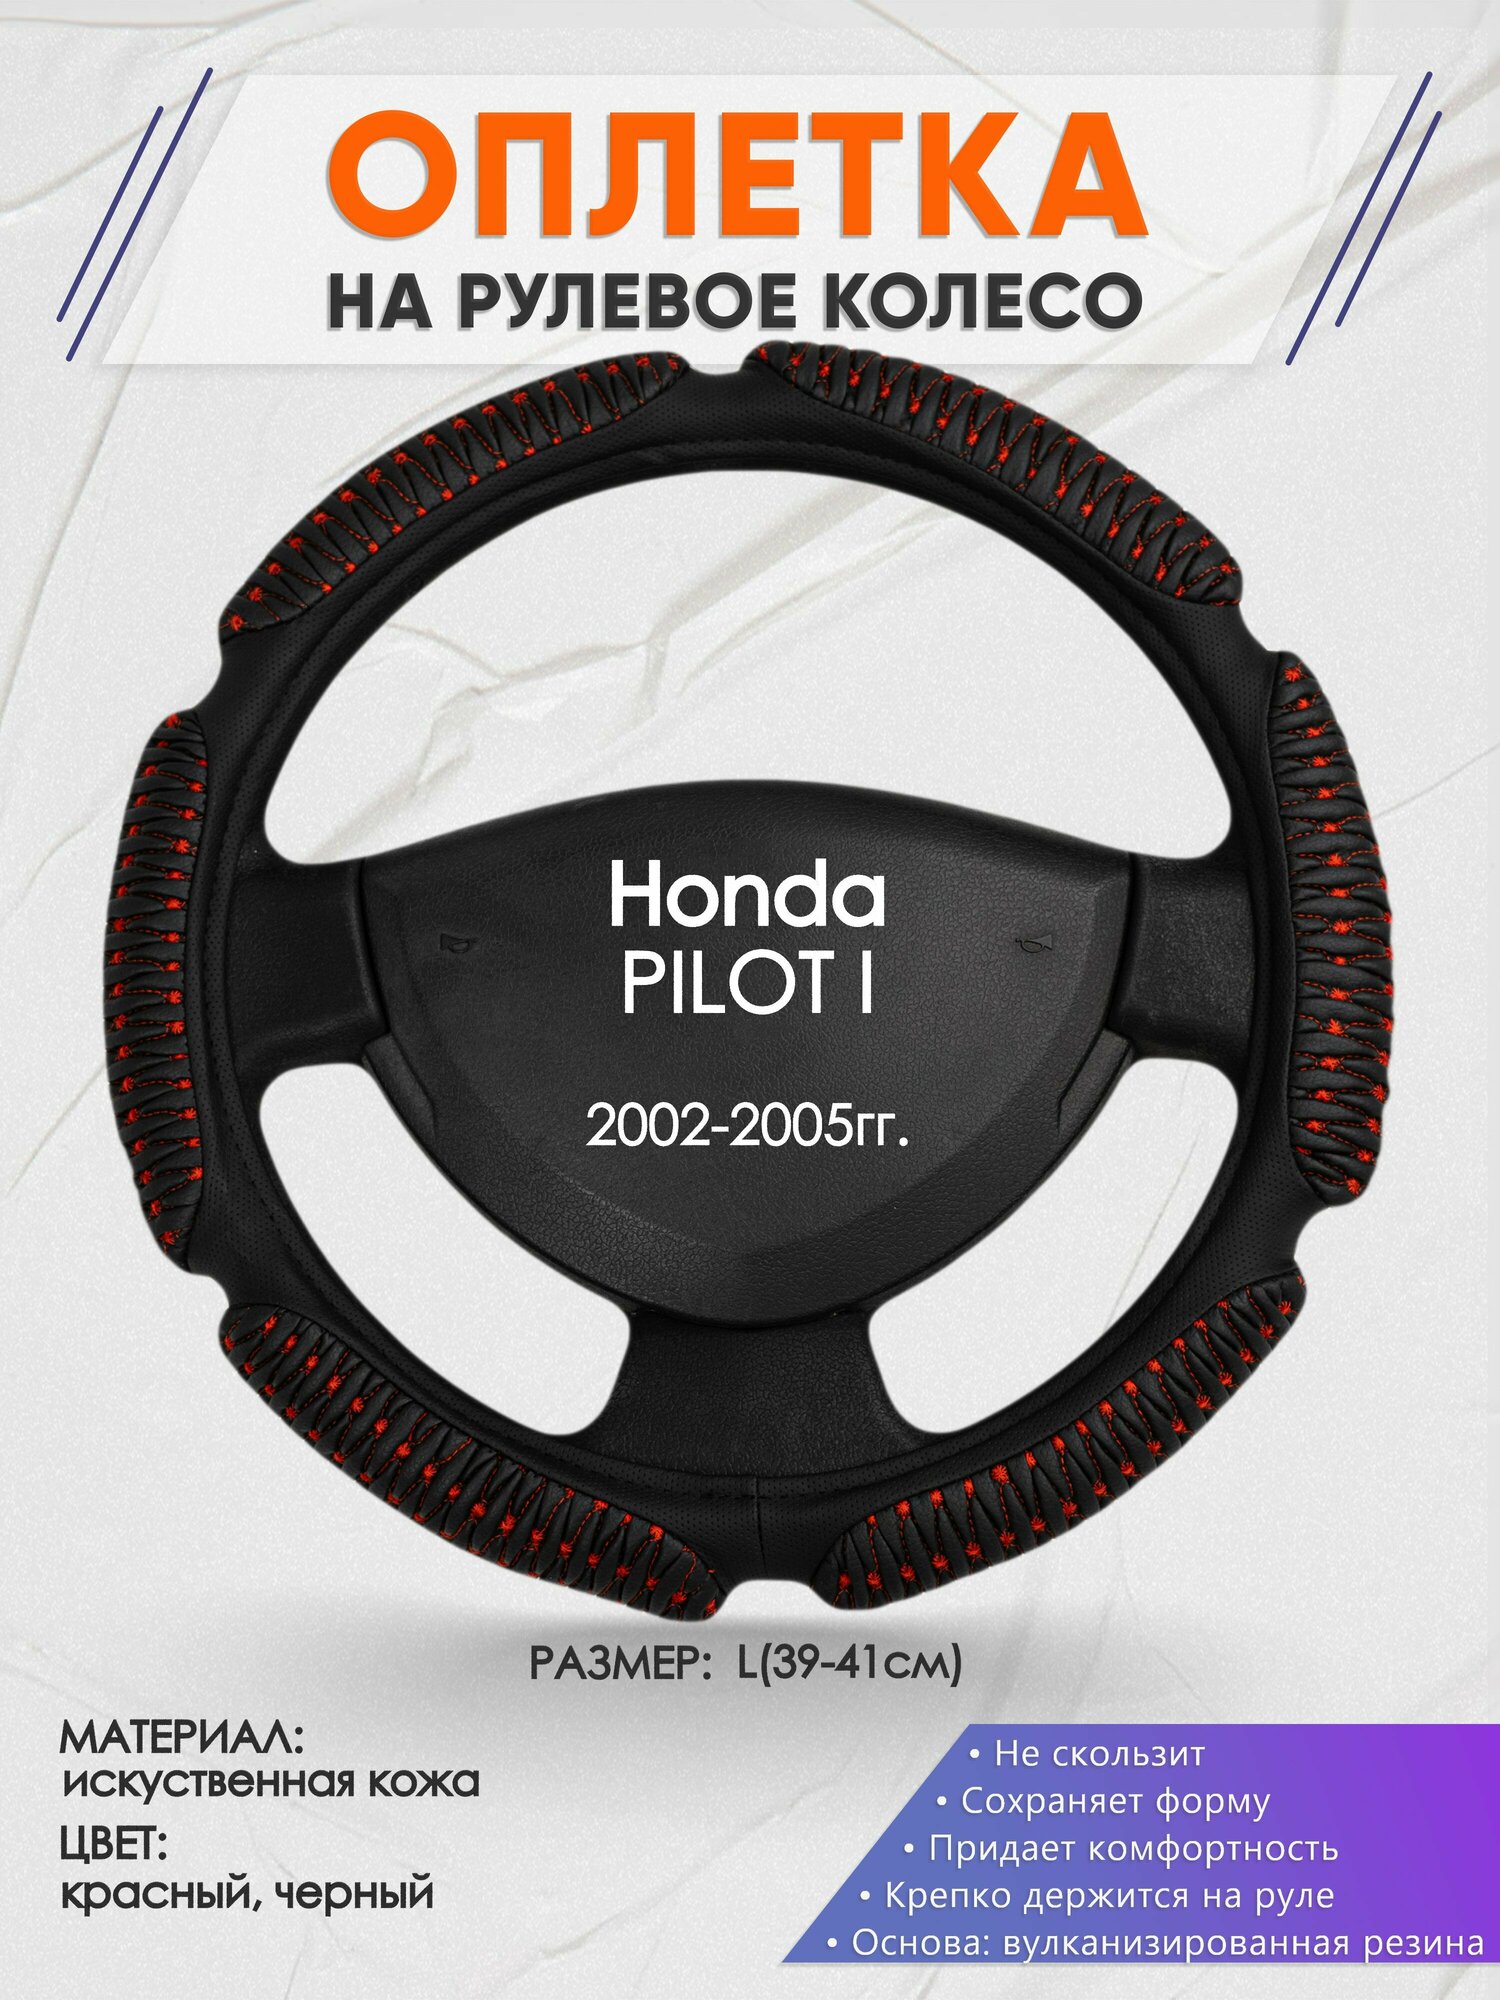 Оплетка на руль для Honda PILOT I(Хонда пилот) 2002-2005, L(39-41см), Искусственная кожа 01